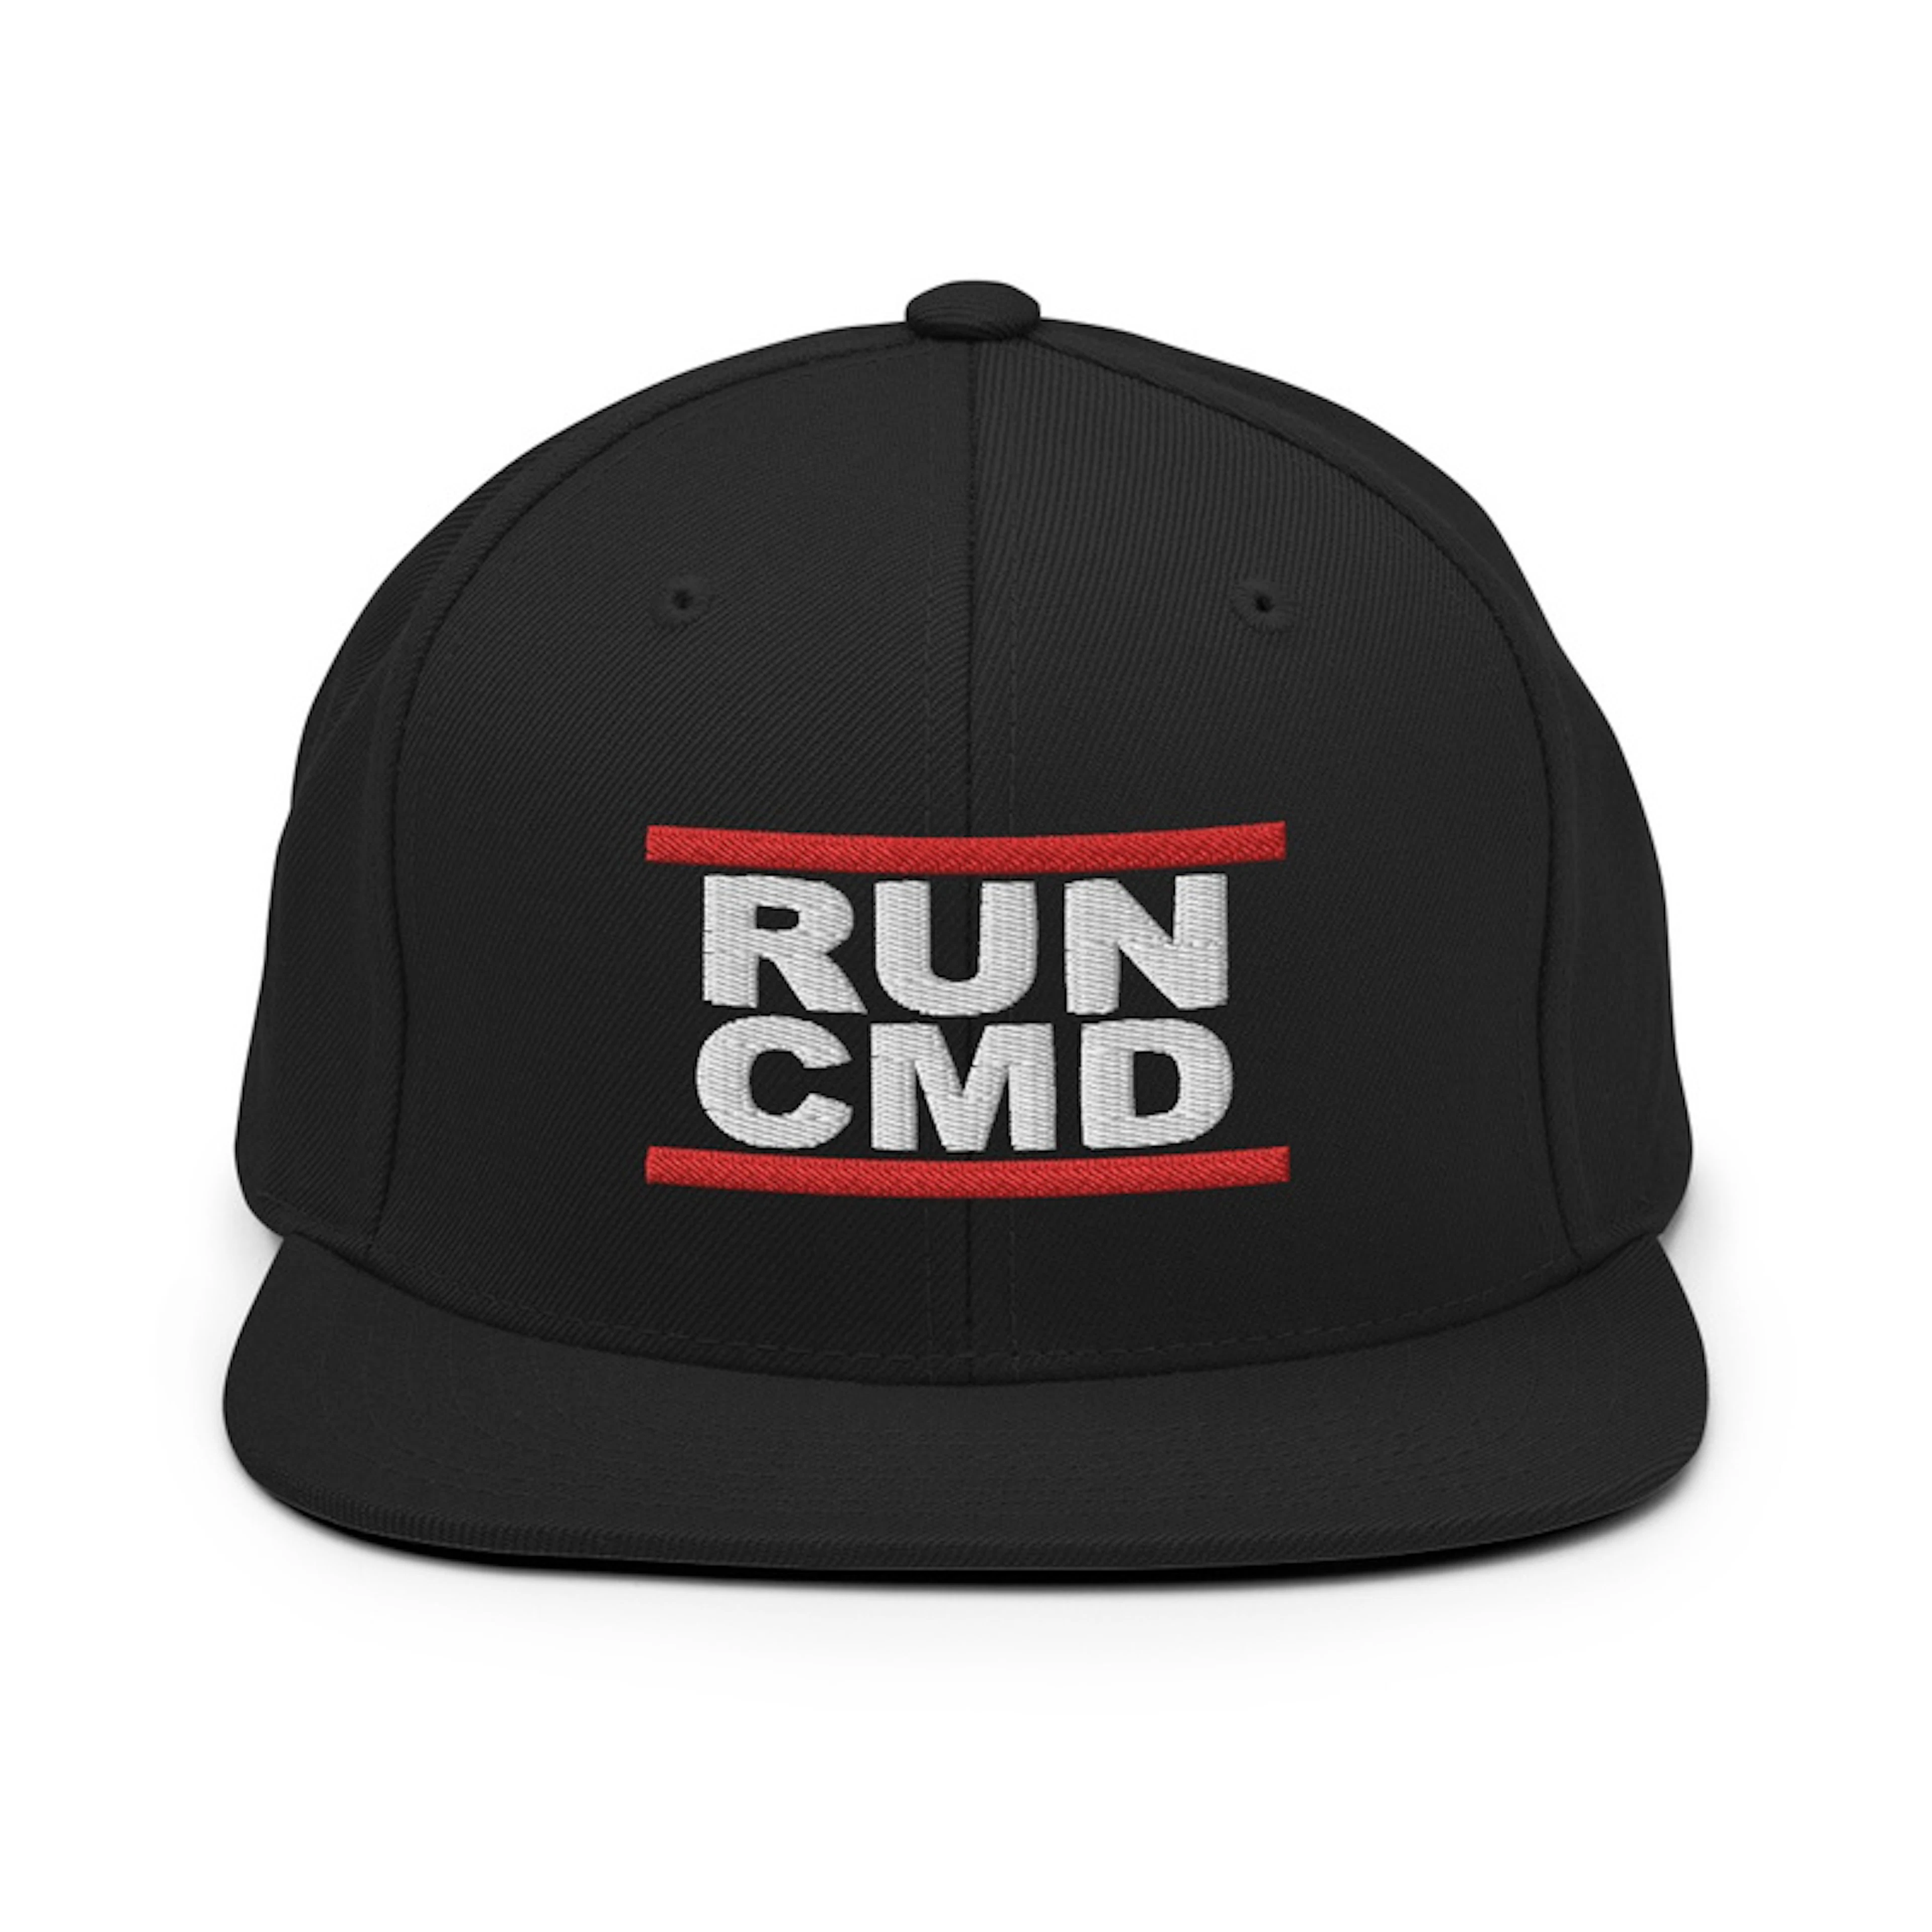 Run CMD Hat